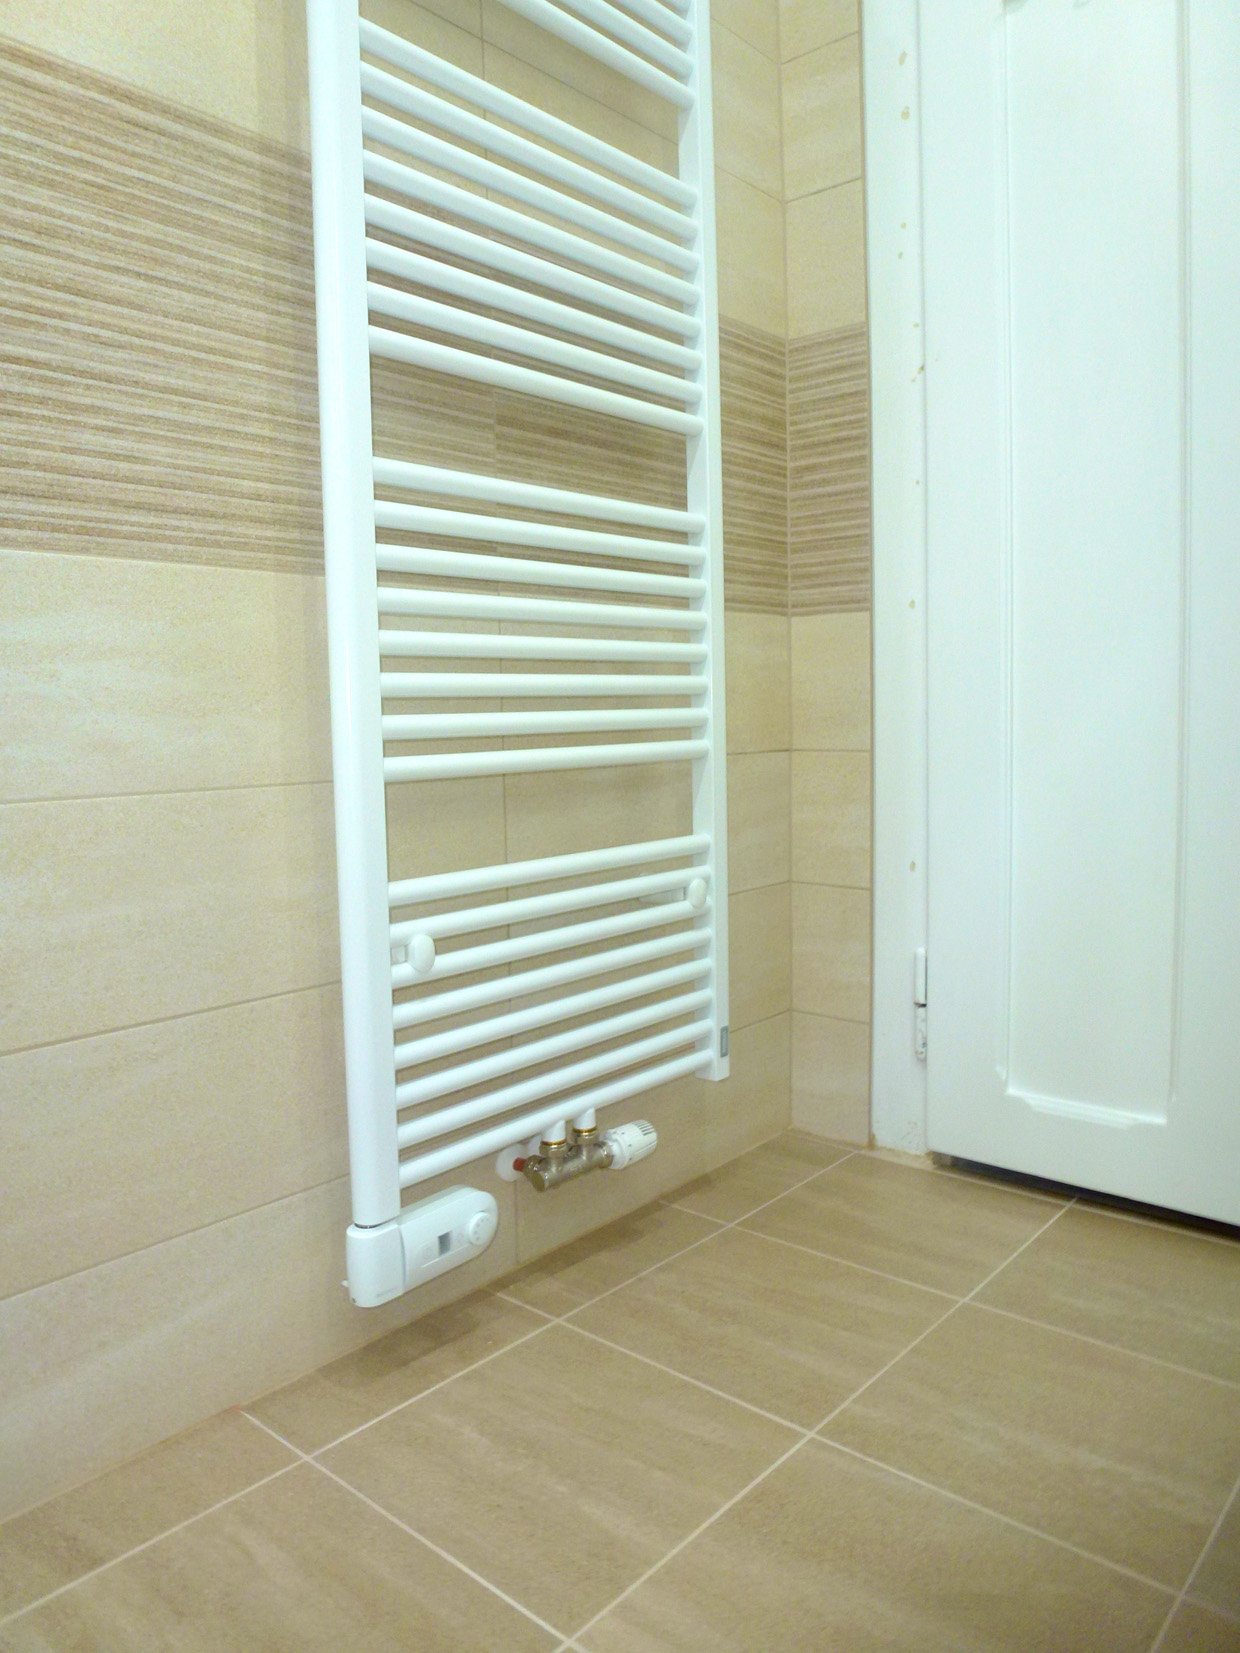 Koupelnový žebřík Korado Koralux Comfort s topným tělesem ELVL pro tepelný komfort s jednoduchým programem sušení, který vám zjednoduší život | Koupelny-svitavy.cz